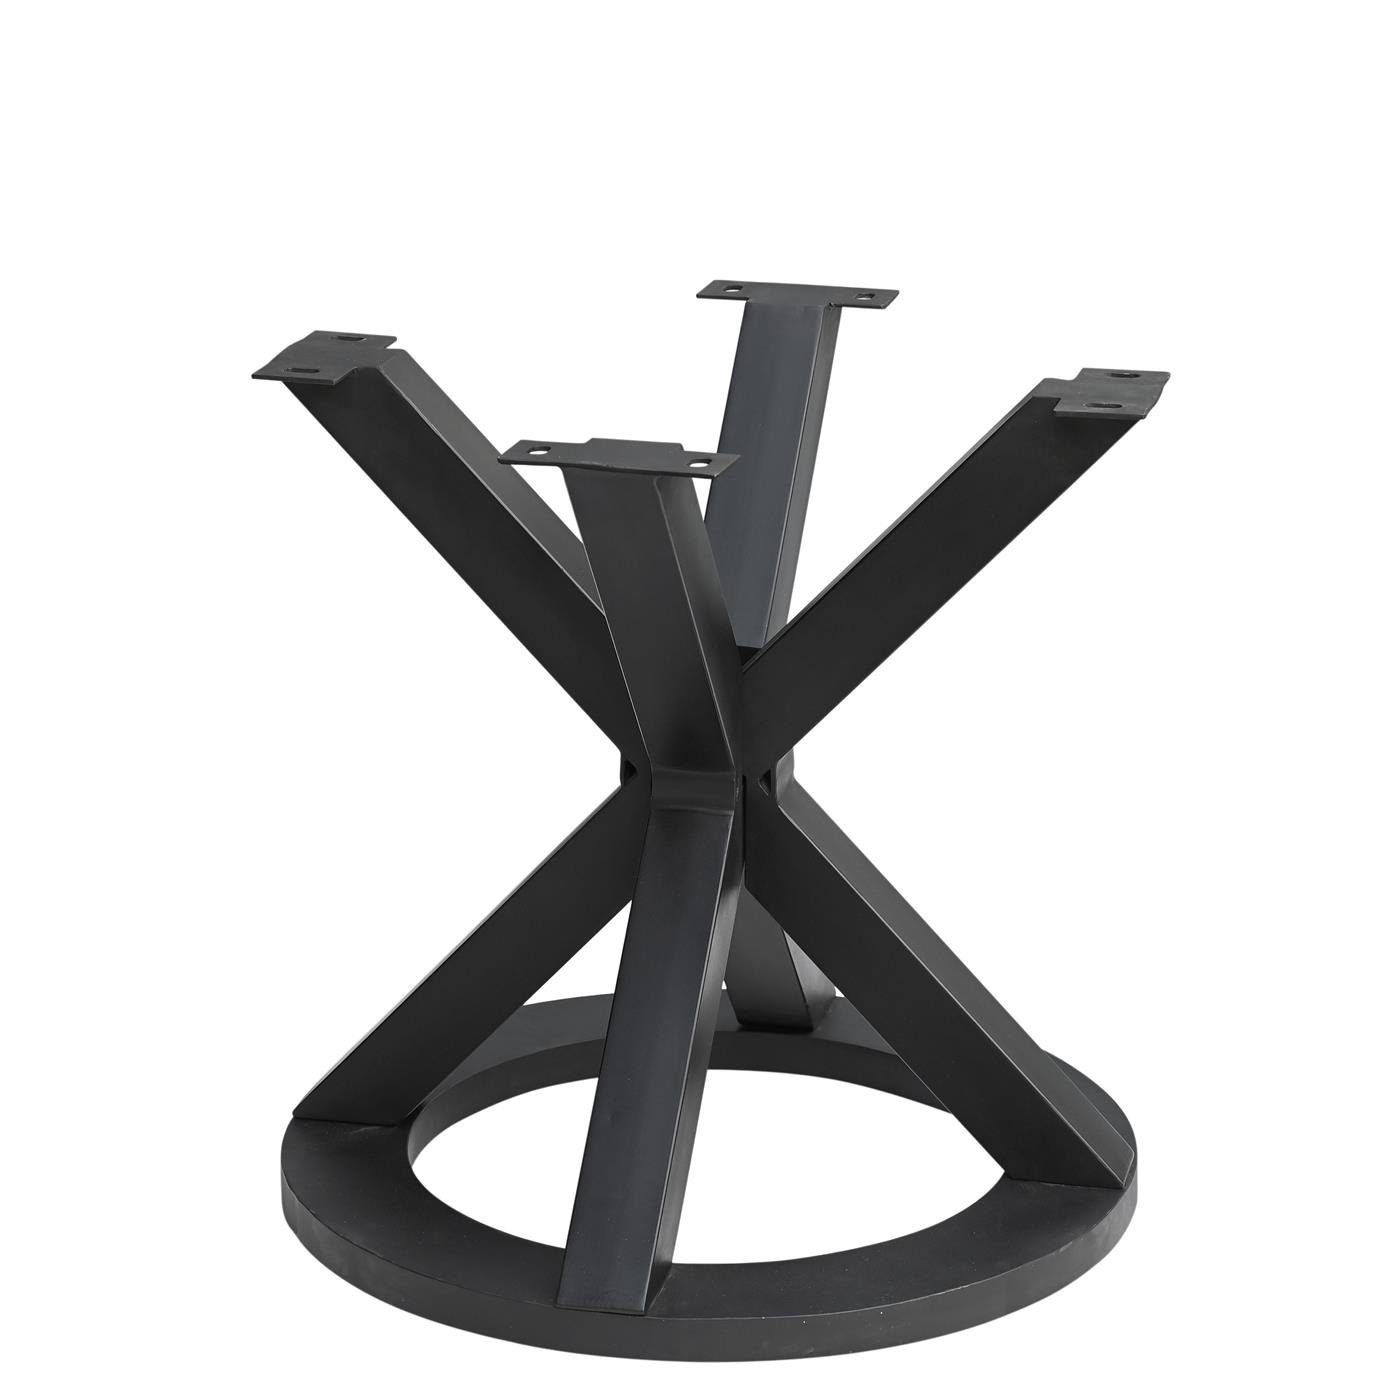 Tischgestell MERID Esstisch geschmiedet Design schwarz Eisen rund, baario Metall Tischfuß Tischbein